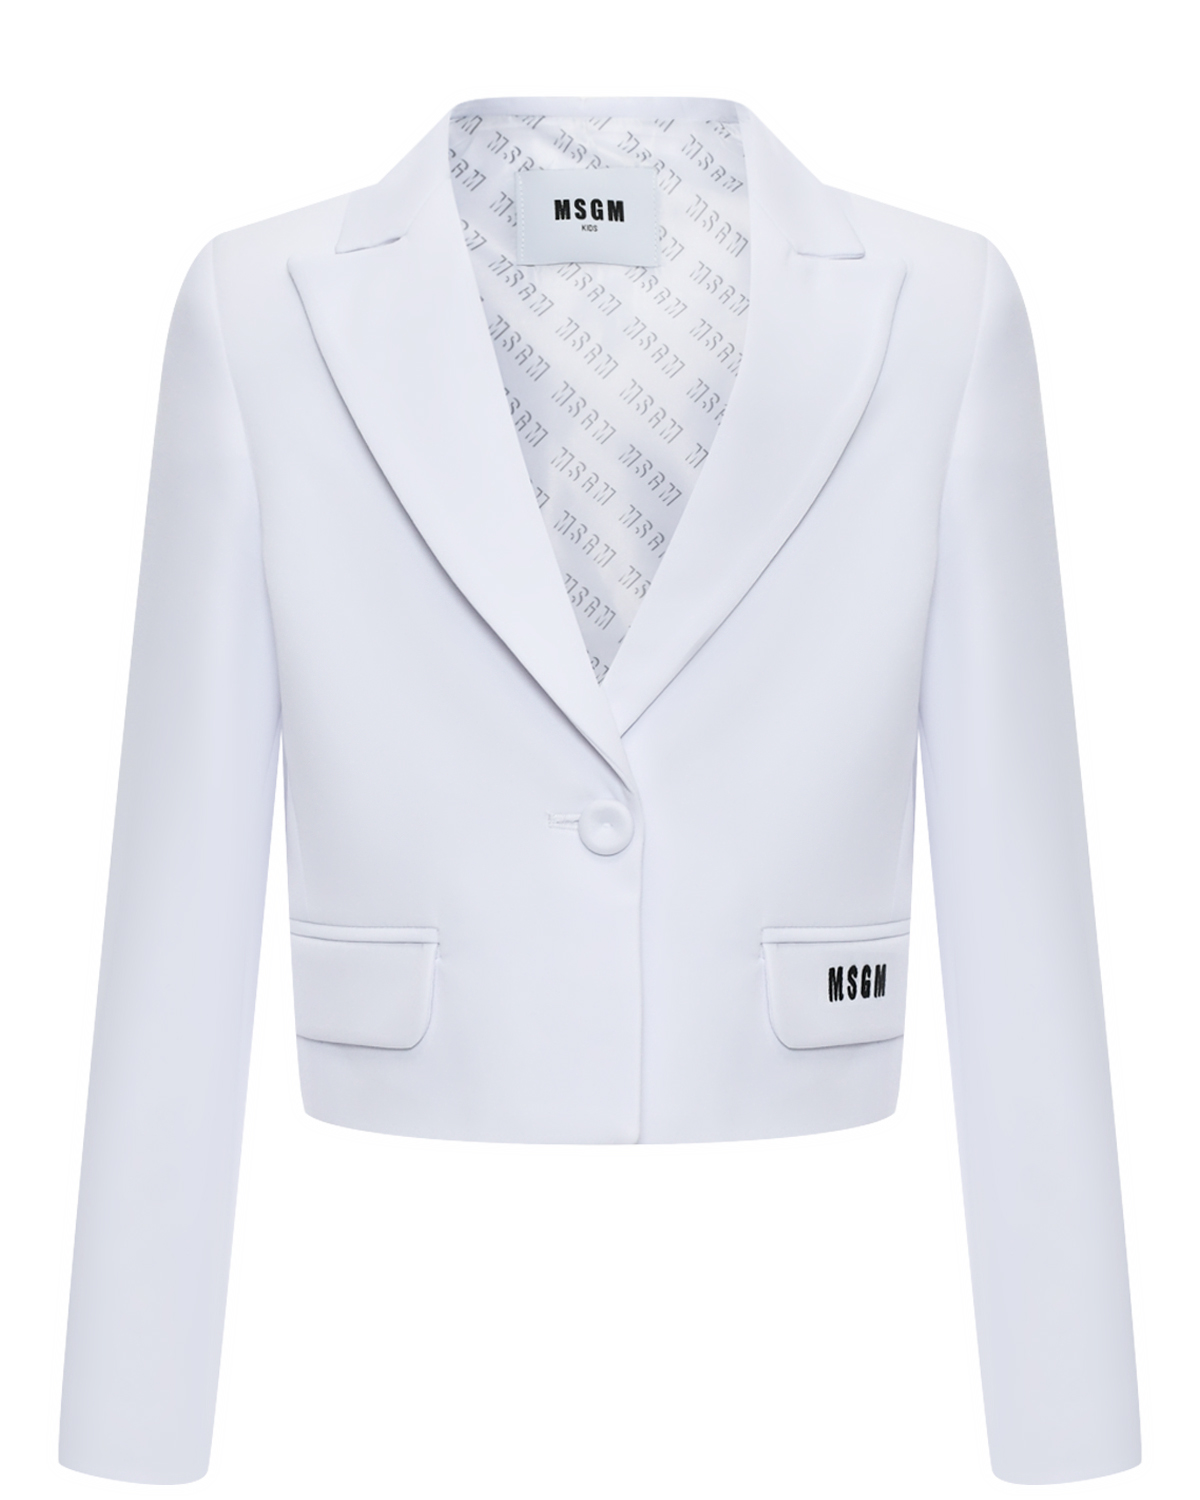 Пиджак укороченный белый на одной пуговице MSGM пиджак оверсайз белый glvr s